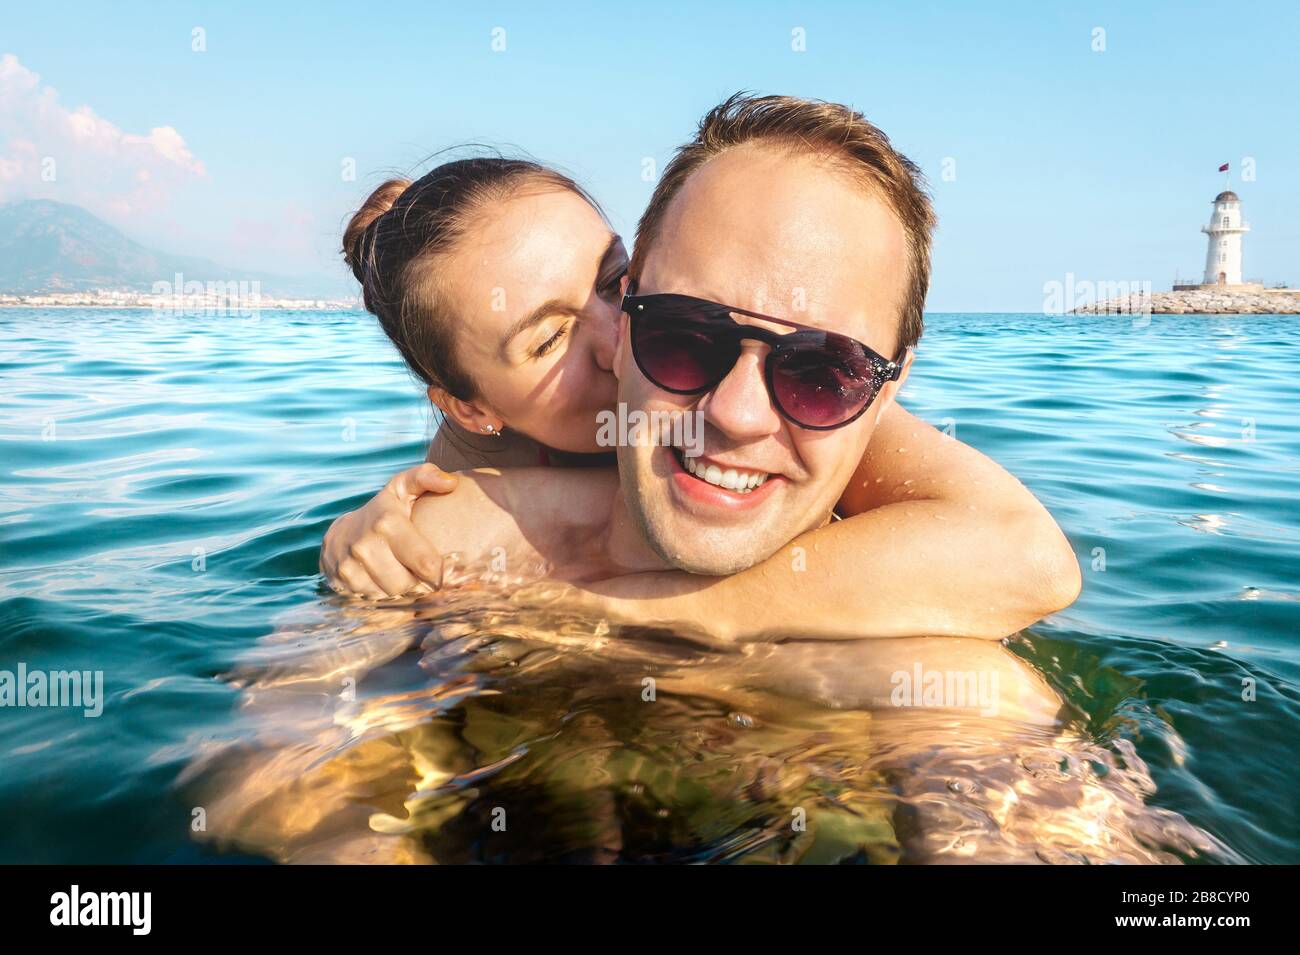 Pareja tomando selfie en el agua mientras nadan en el mar en vacaciones. Dos personas felices en divertidas vacaciones en familia. Romántica luna de miel en verano tropical. Foto de stock